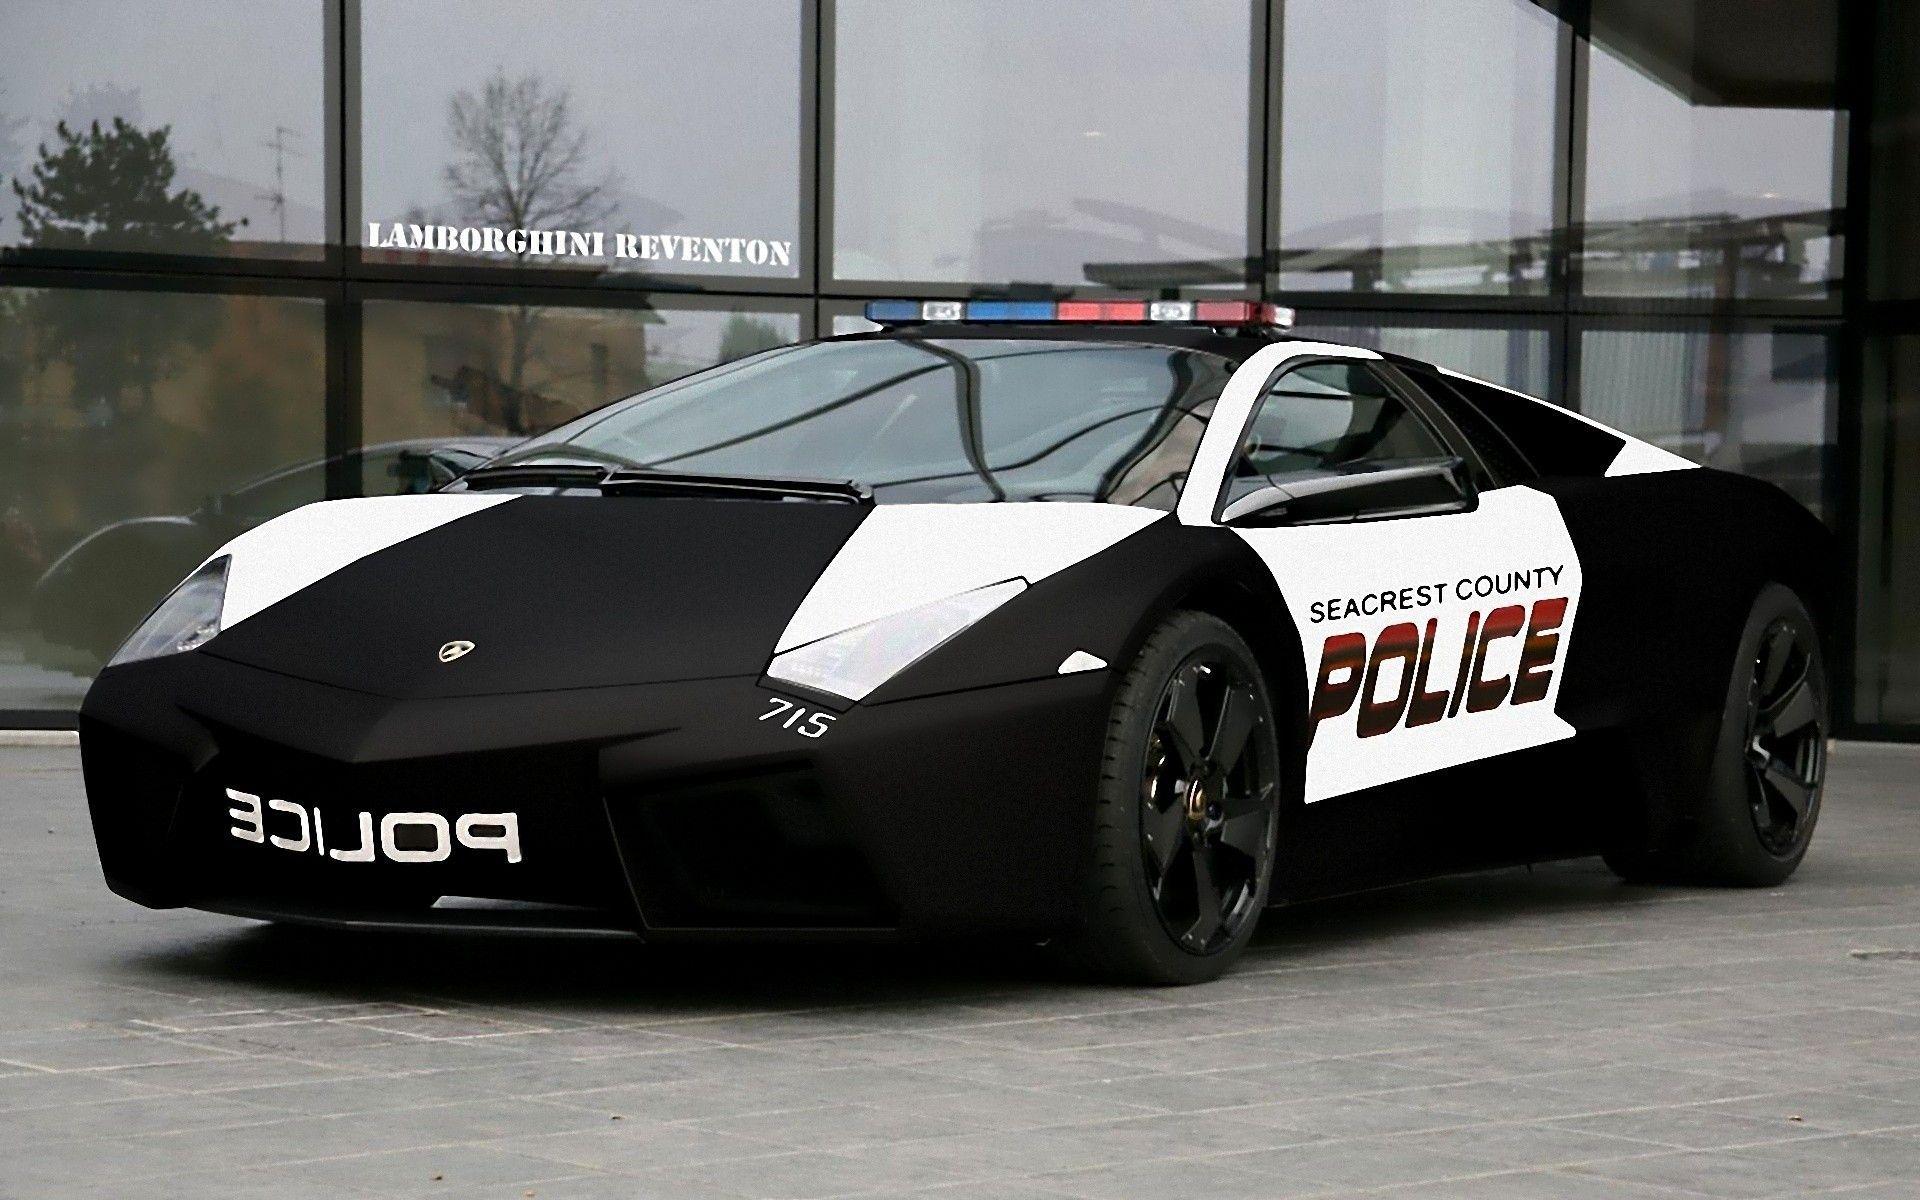 Lamborghini Police Cars Wallpaper Photo 324. Police cars, Police lamborghini, Sports cars lamborghini